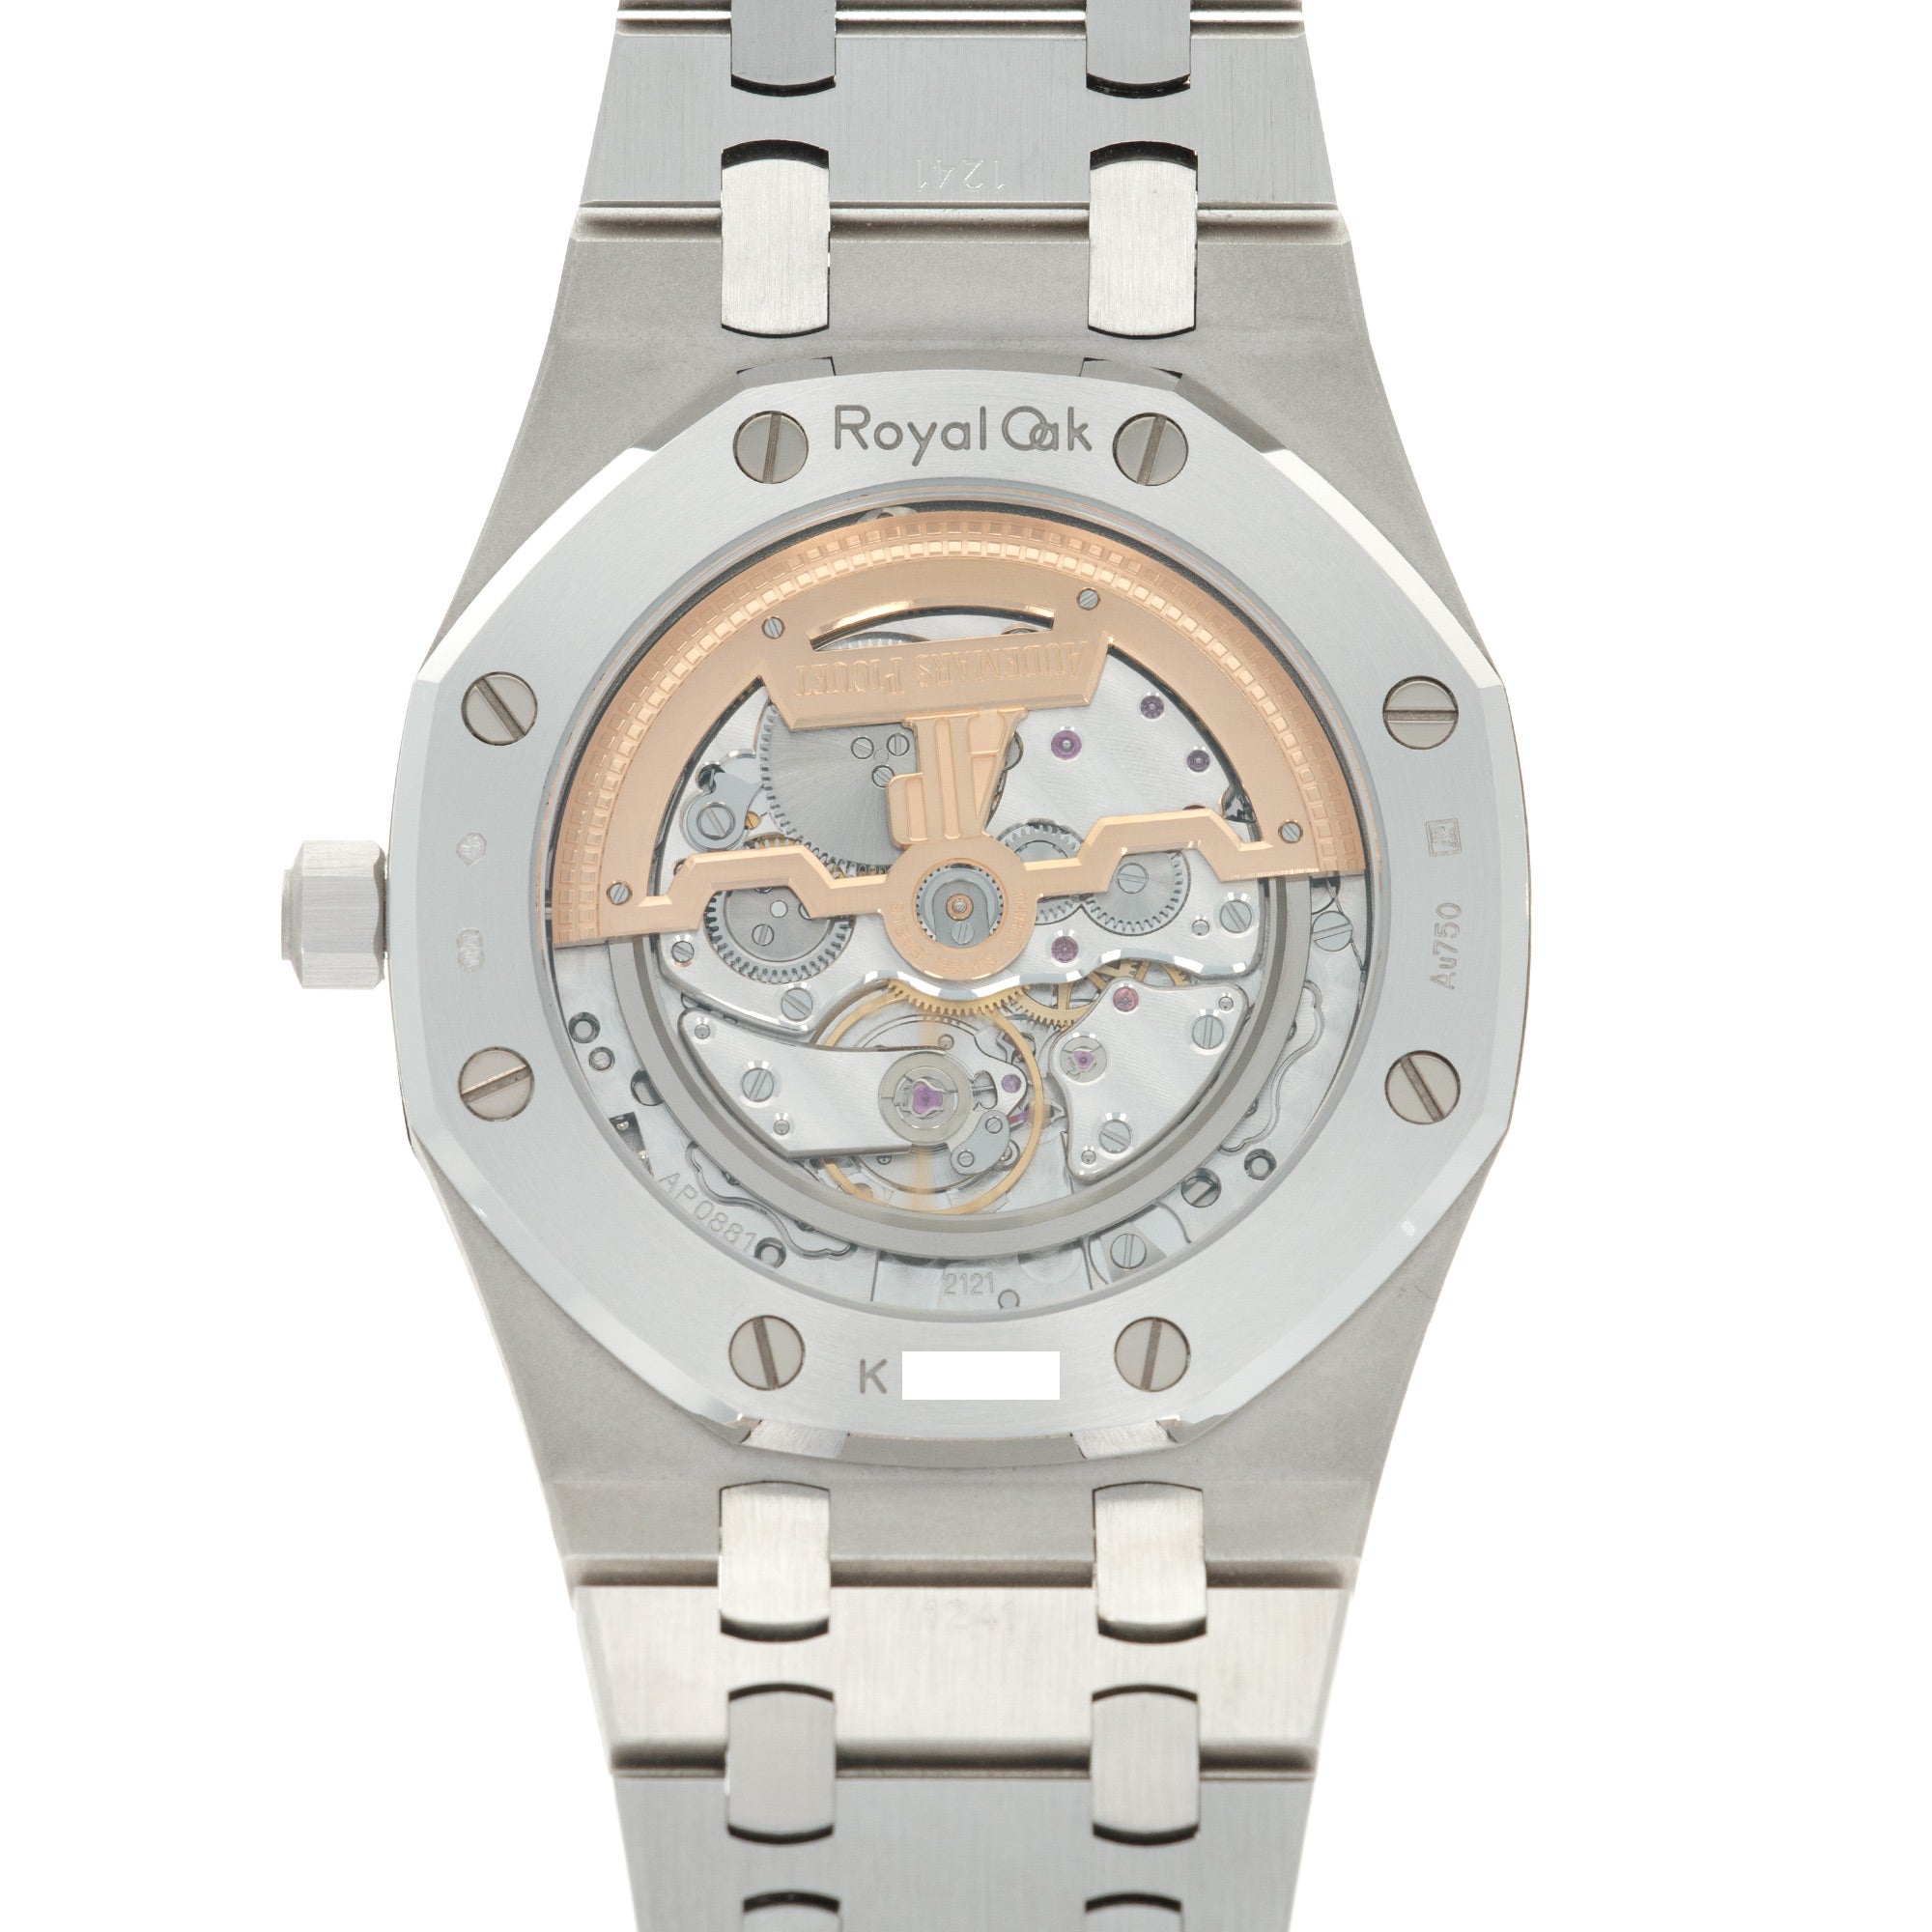 Audemars Piguet - Audemars Piguet White Gold Royal Oak Diamond Watch Ref. 15202 - The Keystone Watches